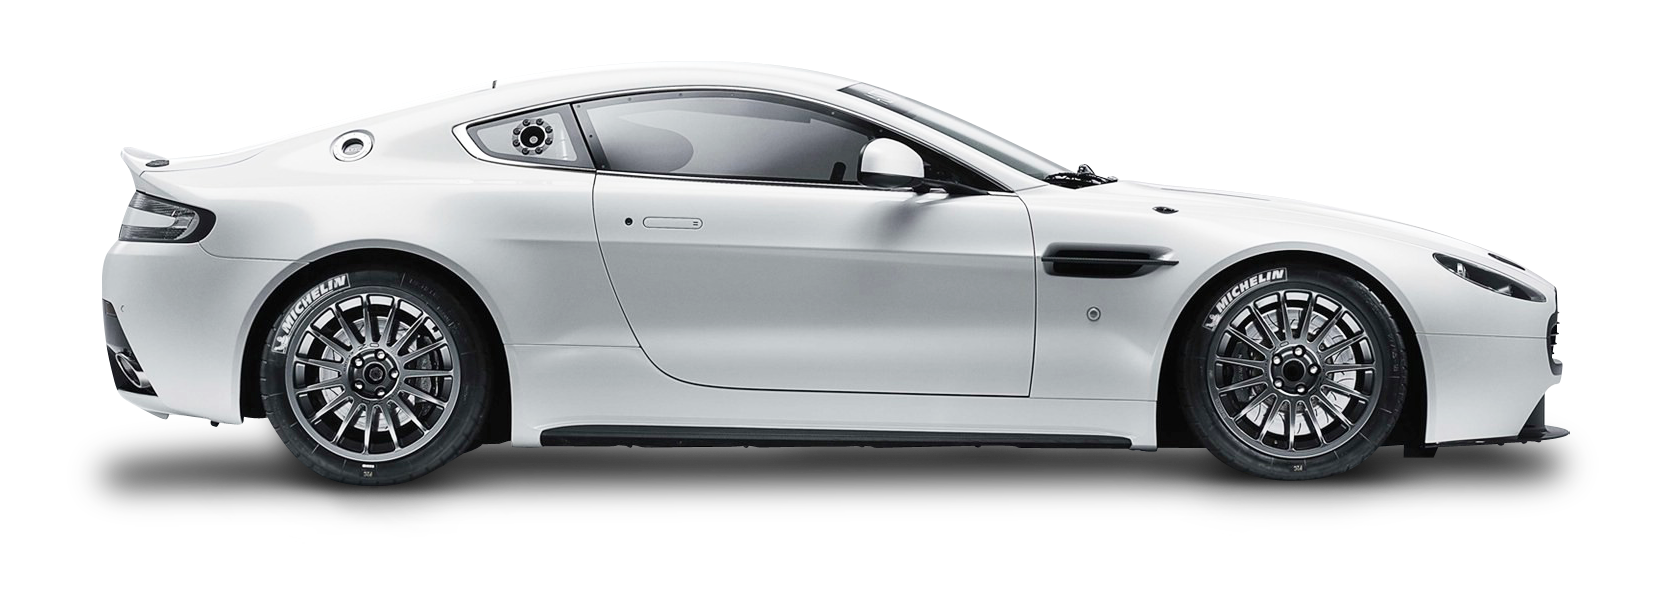 Aston Martin Vantage Gt4 White Car Png Image Purepng